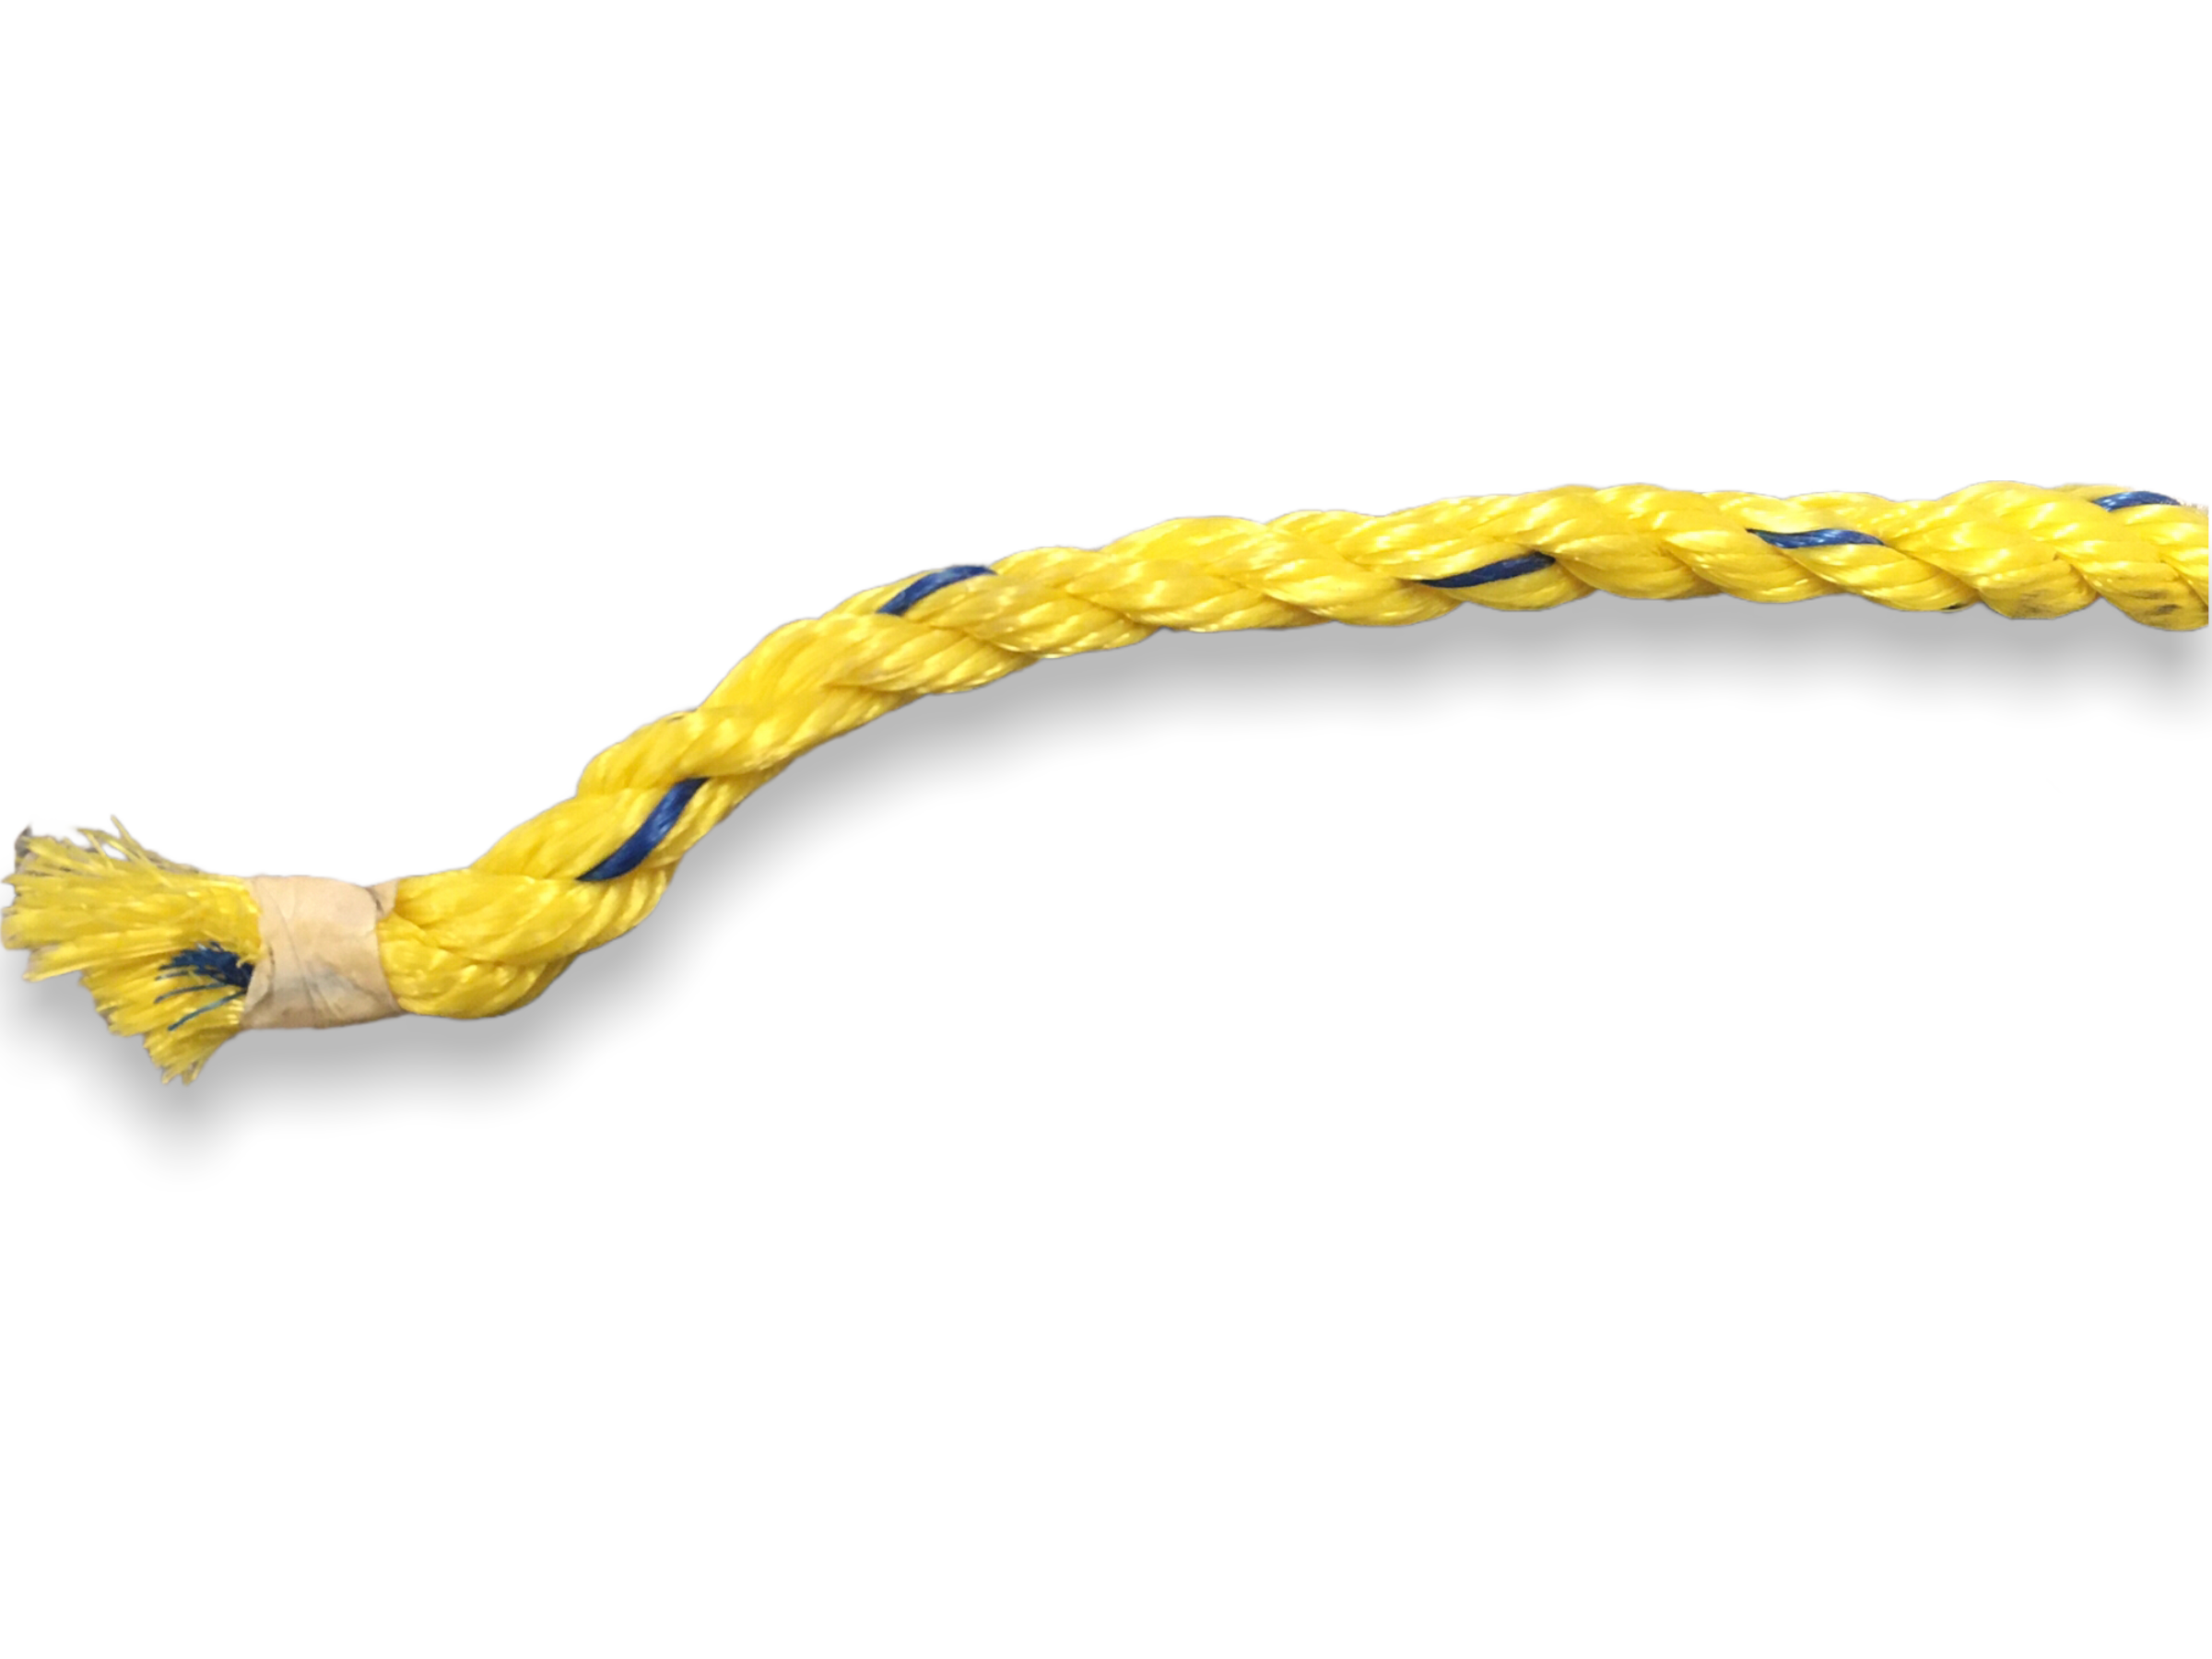  Pangocho Jinchao-Cable trenzado de tela cubierta de alambre  vintage, cuerda de cáñamo trenzado par de cable eléctrico 0.079 x 0.030 in  5 M/32.8 ft para lámparas vintage y antiguas de rayón (